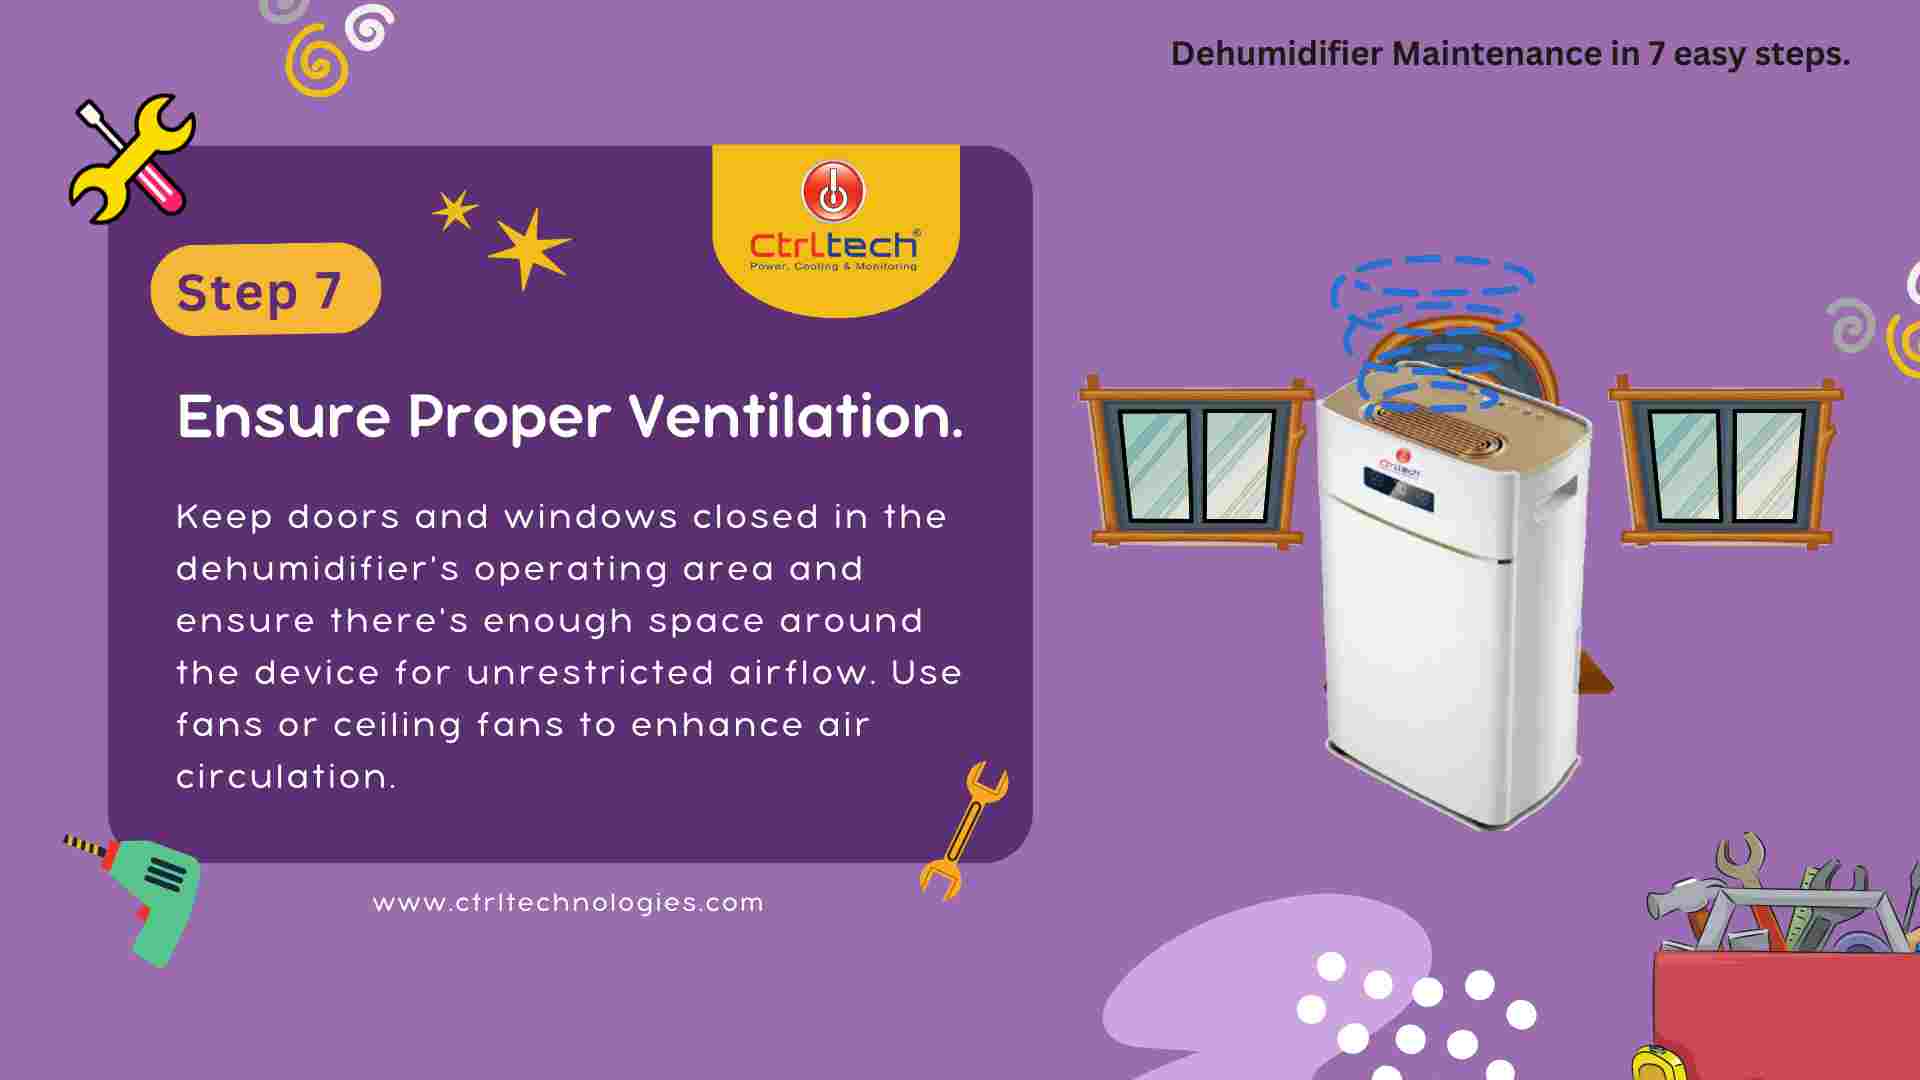 Step 7 - Ensuring proper ventilation